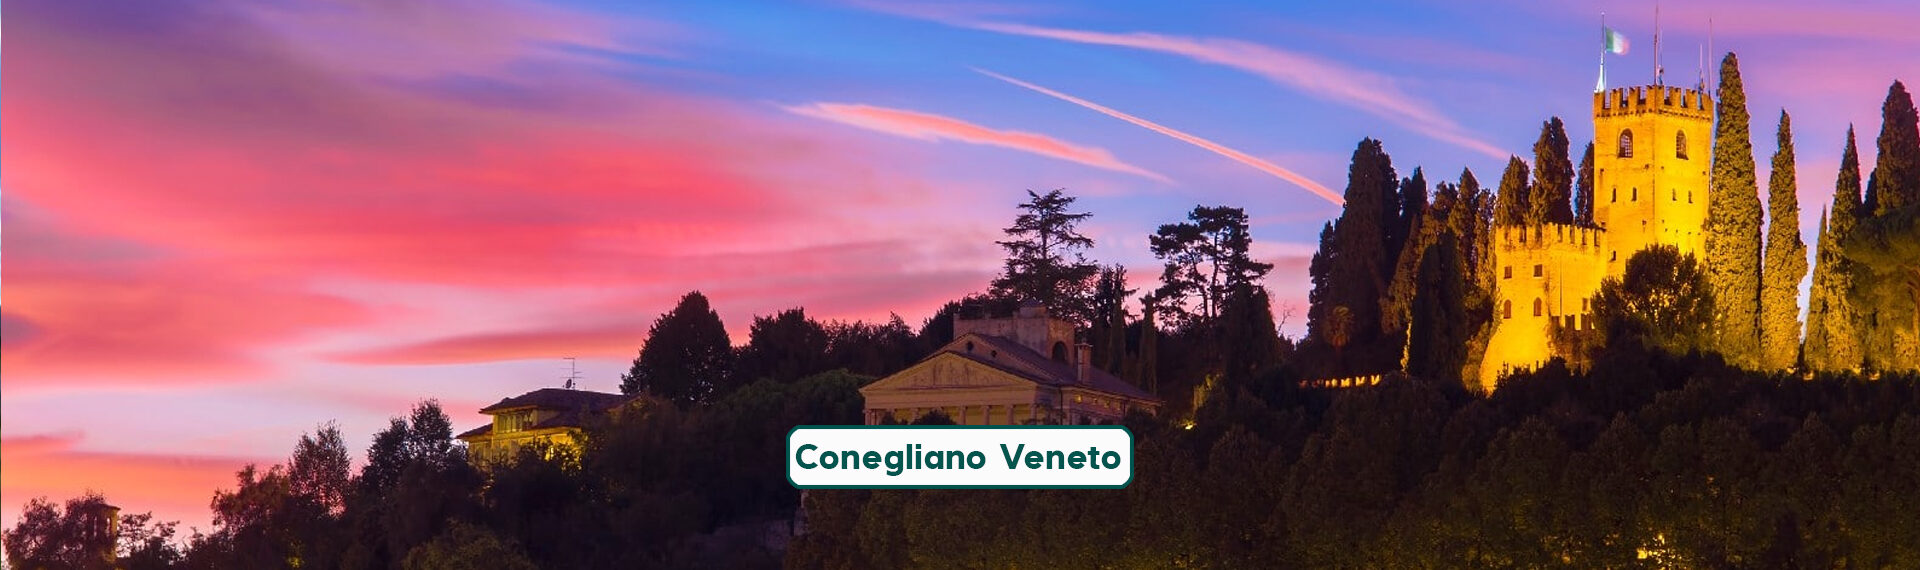 Conegliano Veneto